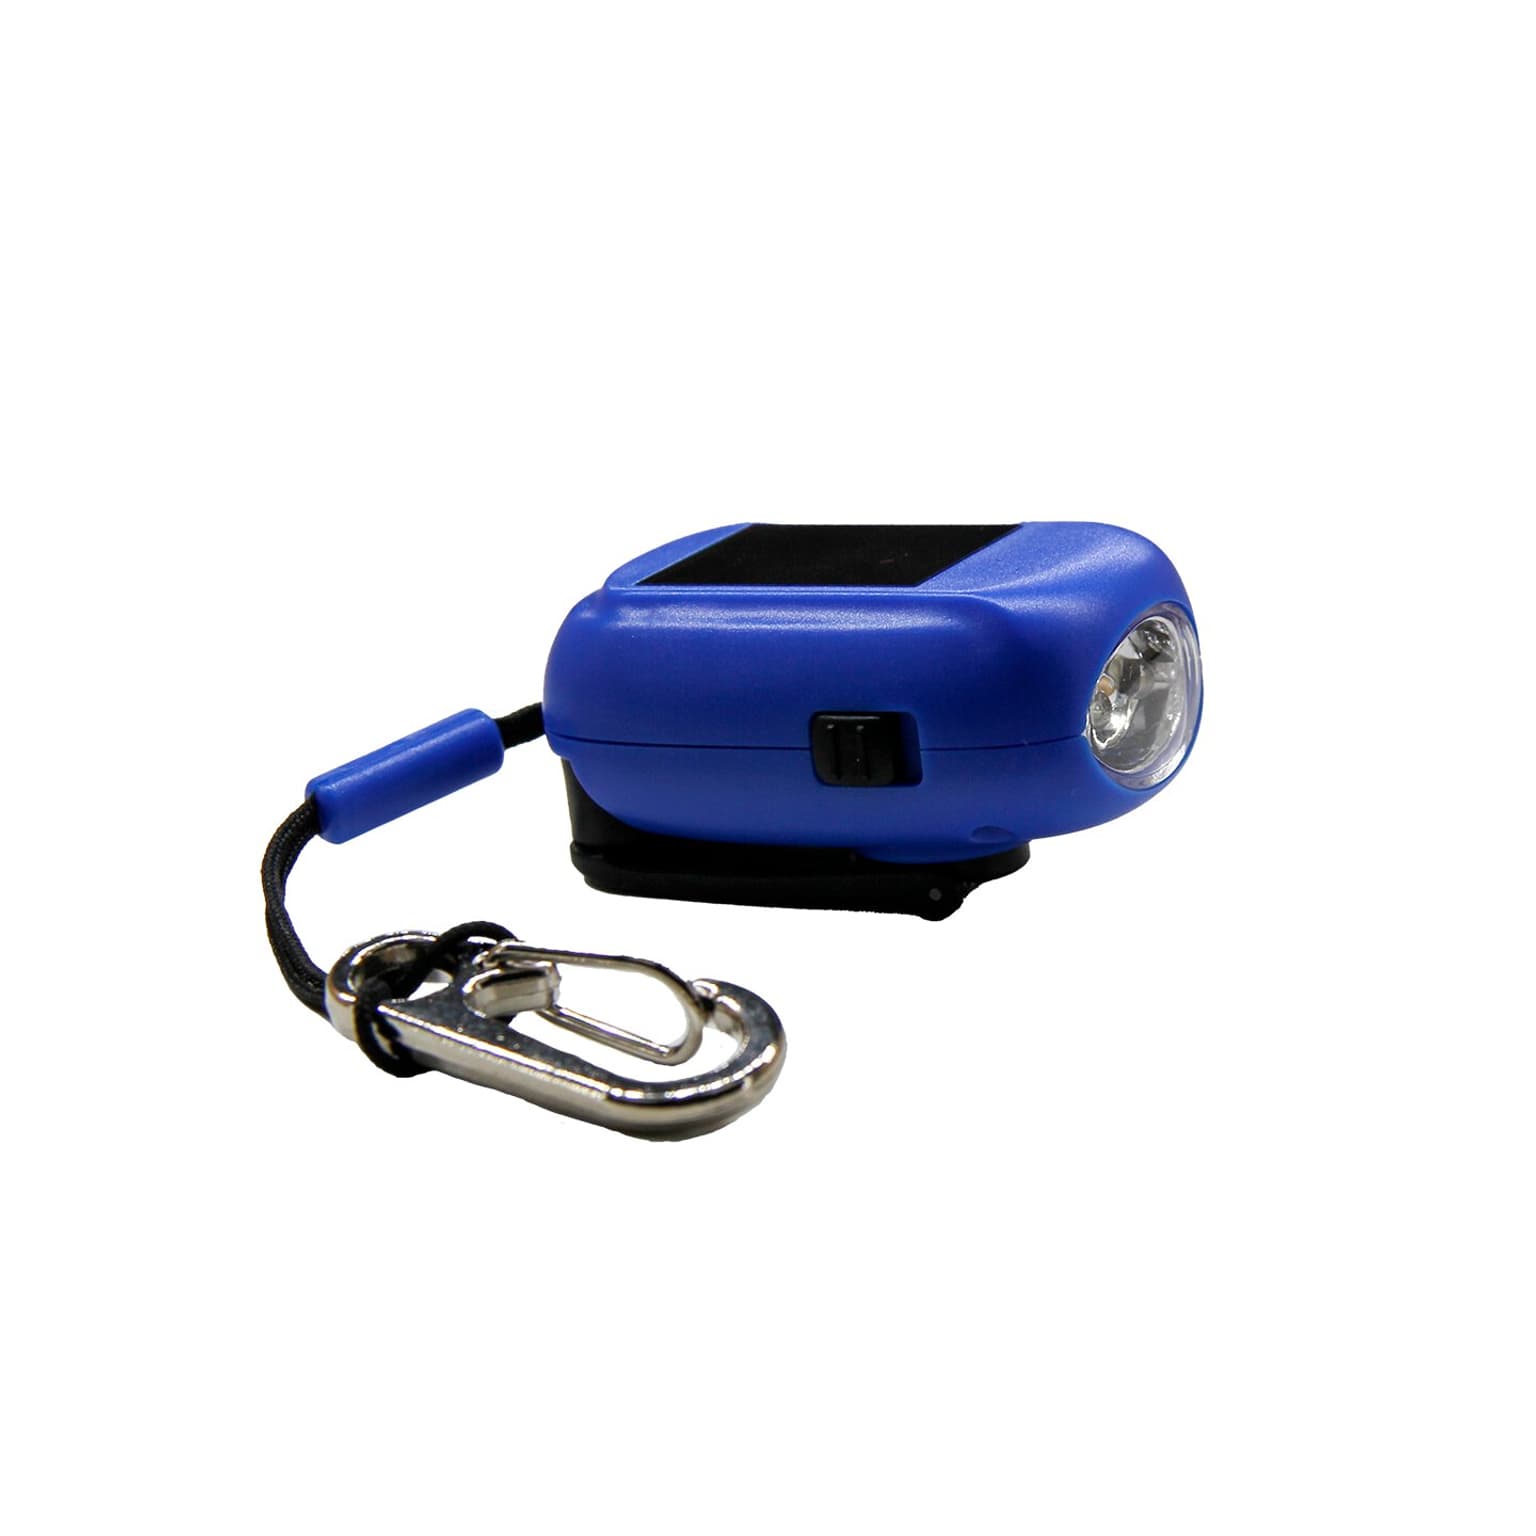 Essential Elements Essential Elements Mini Taschenlampe Recycled inkl. Karabiner Taschenlampe blau 4